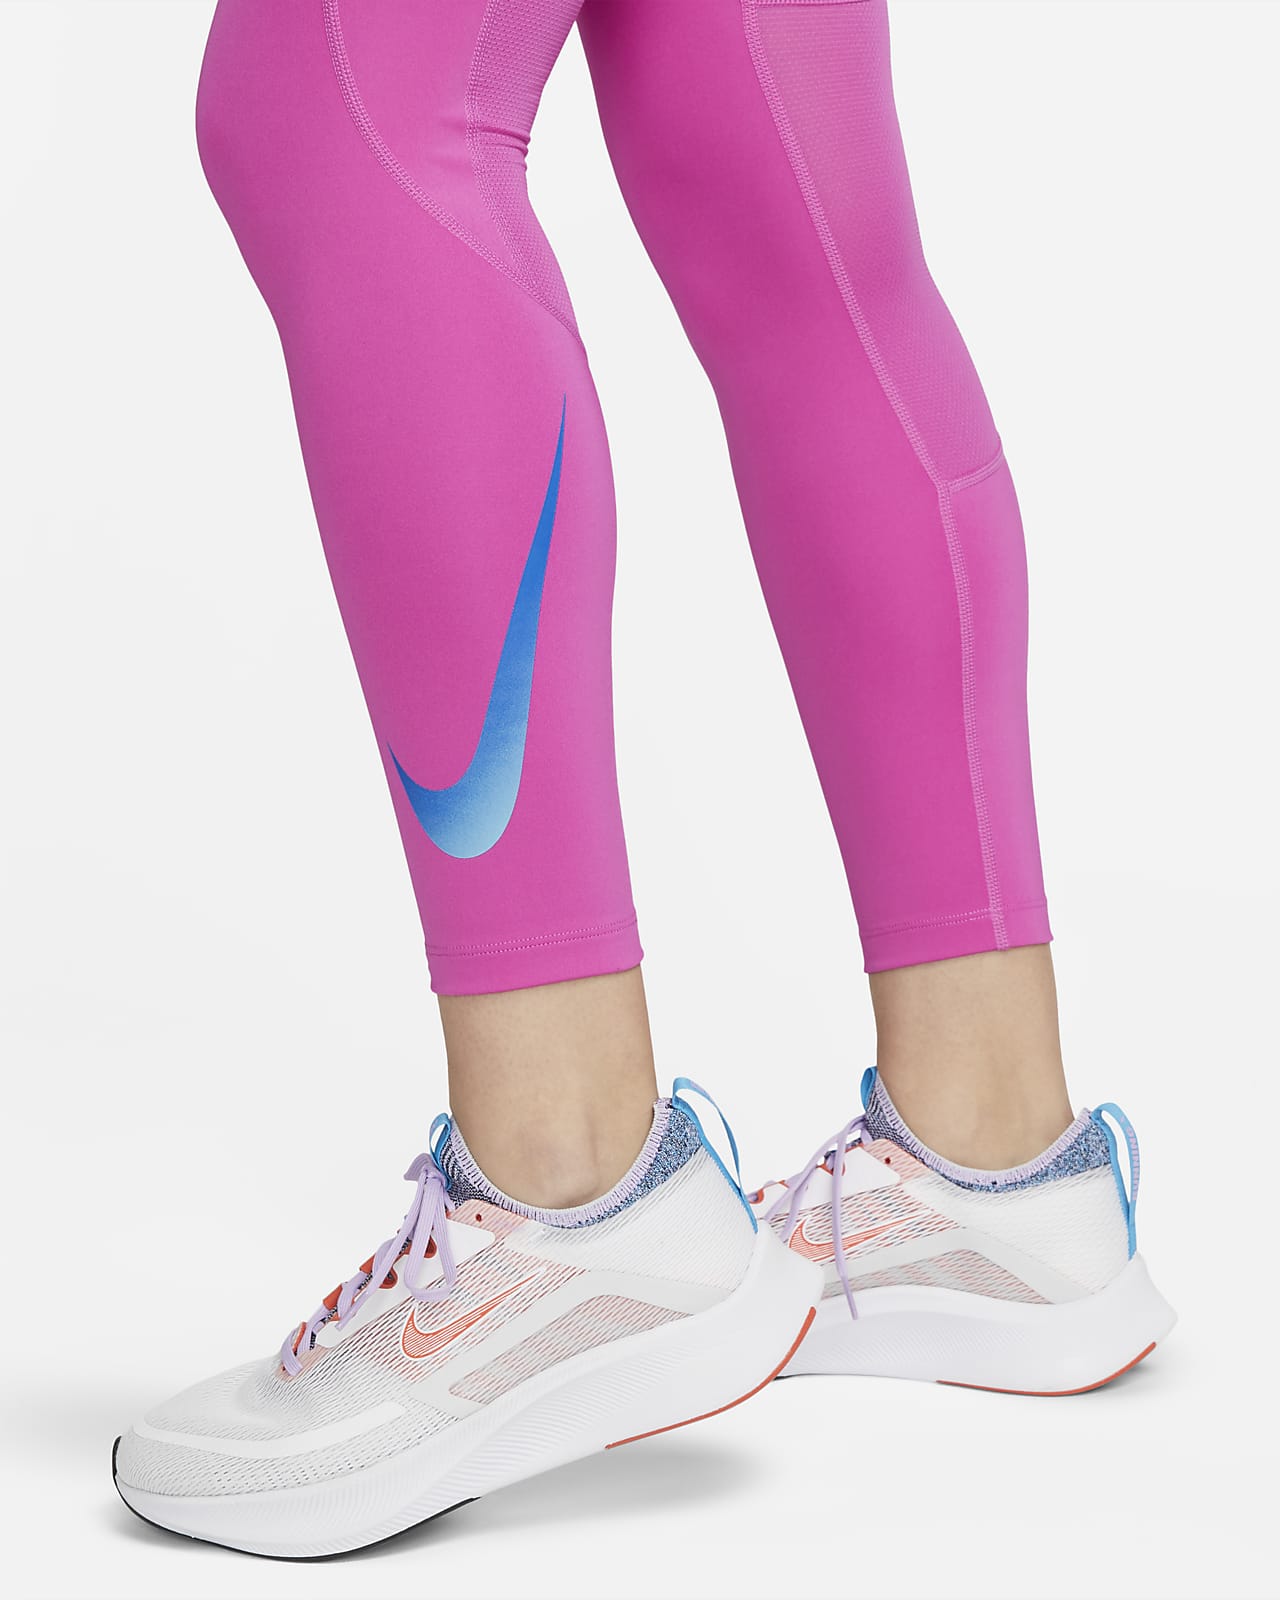 Collants et Leggings avec Poches. Nike FR